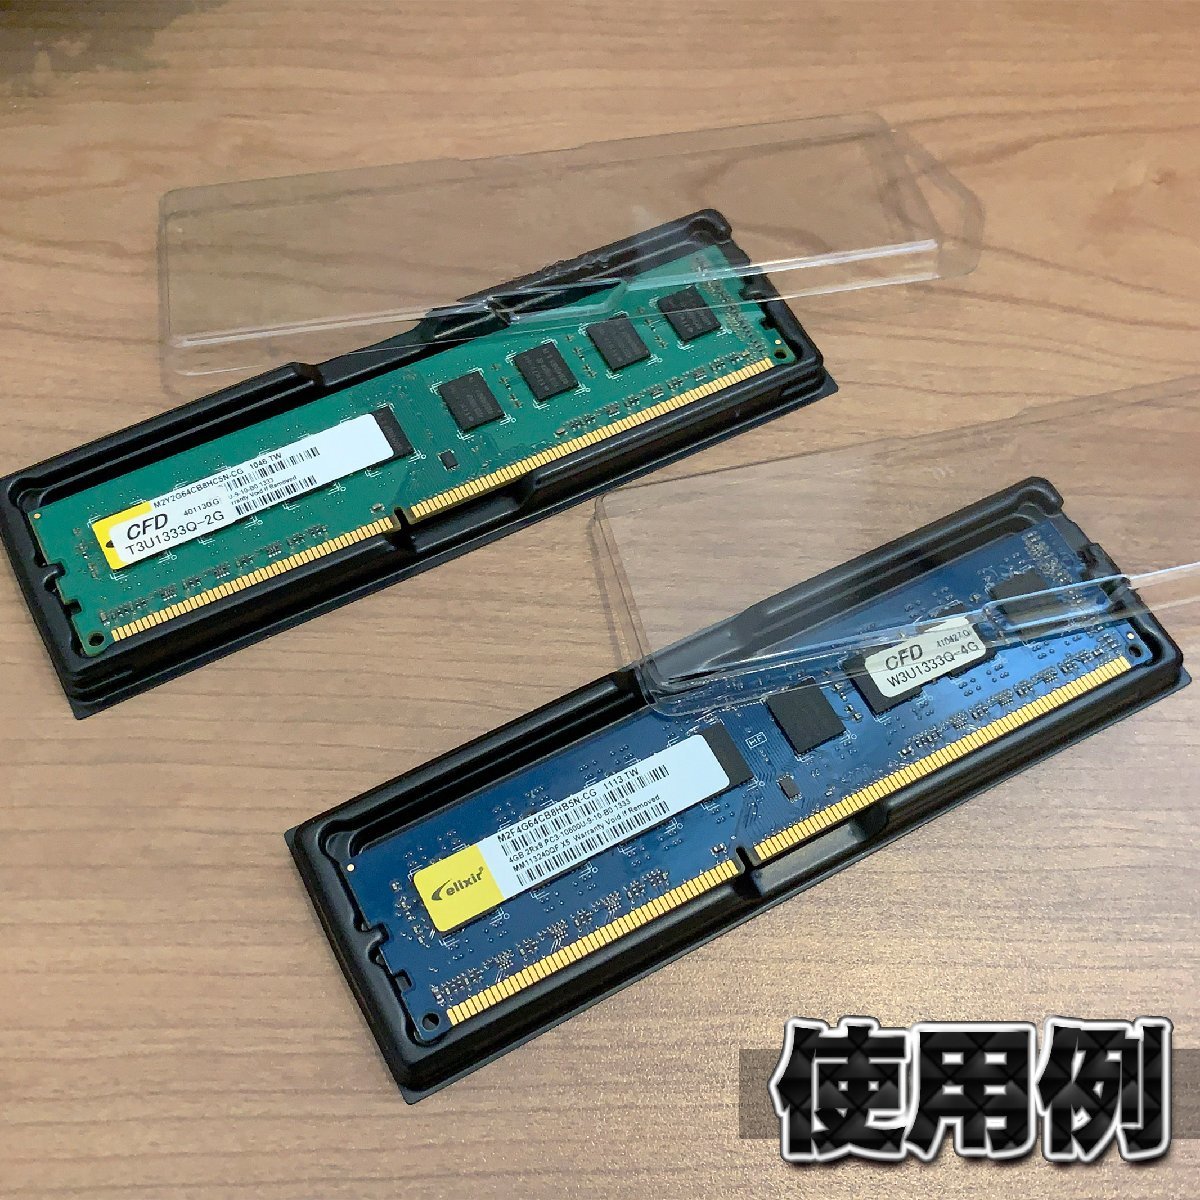 【 DDR 対応 】蓋付き PC メモリー シェルケース DIMM 用 プラスチック 保管 収納ケース 50枚セット_画像5